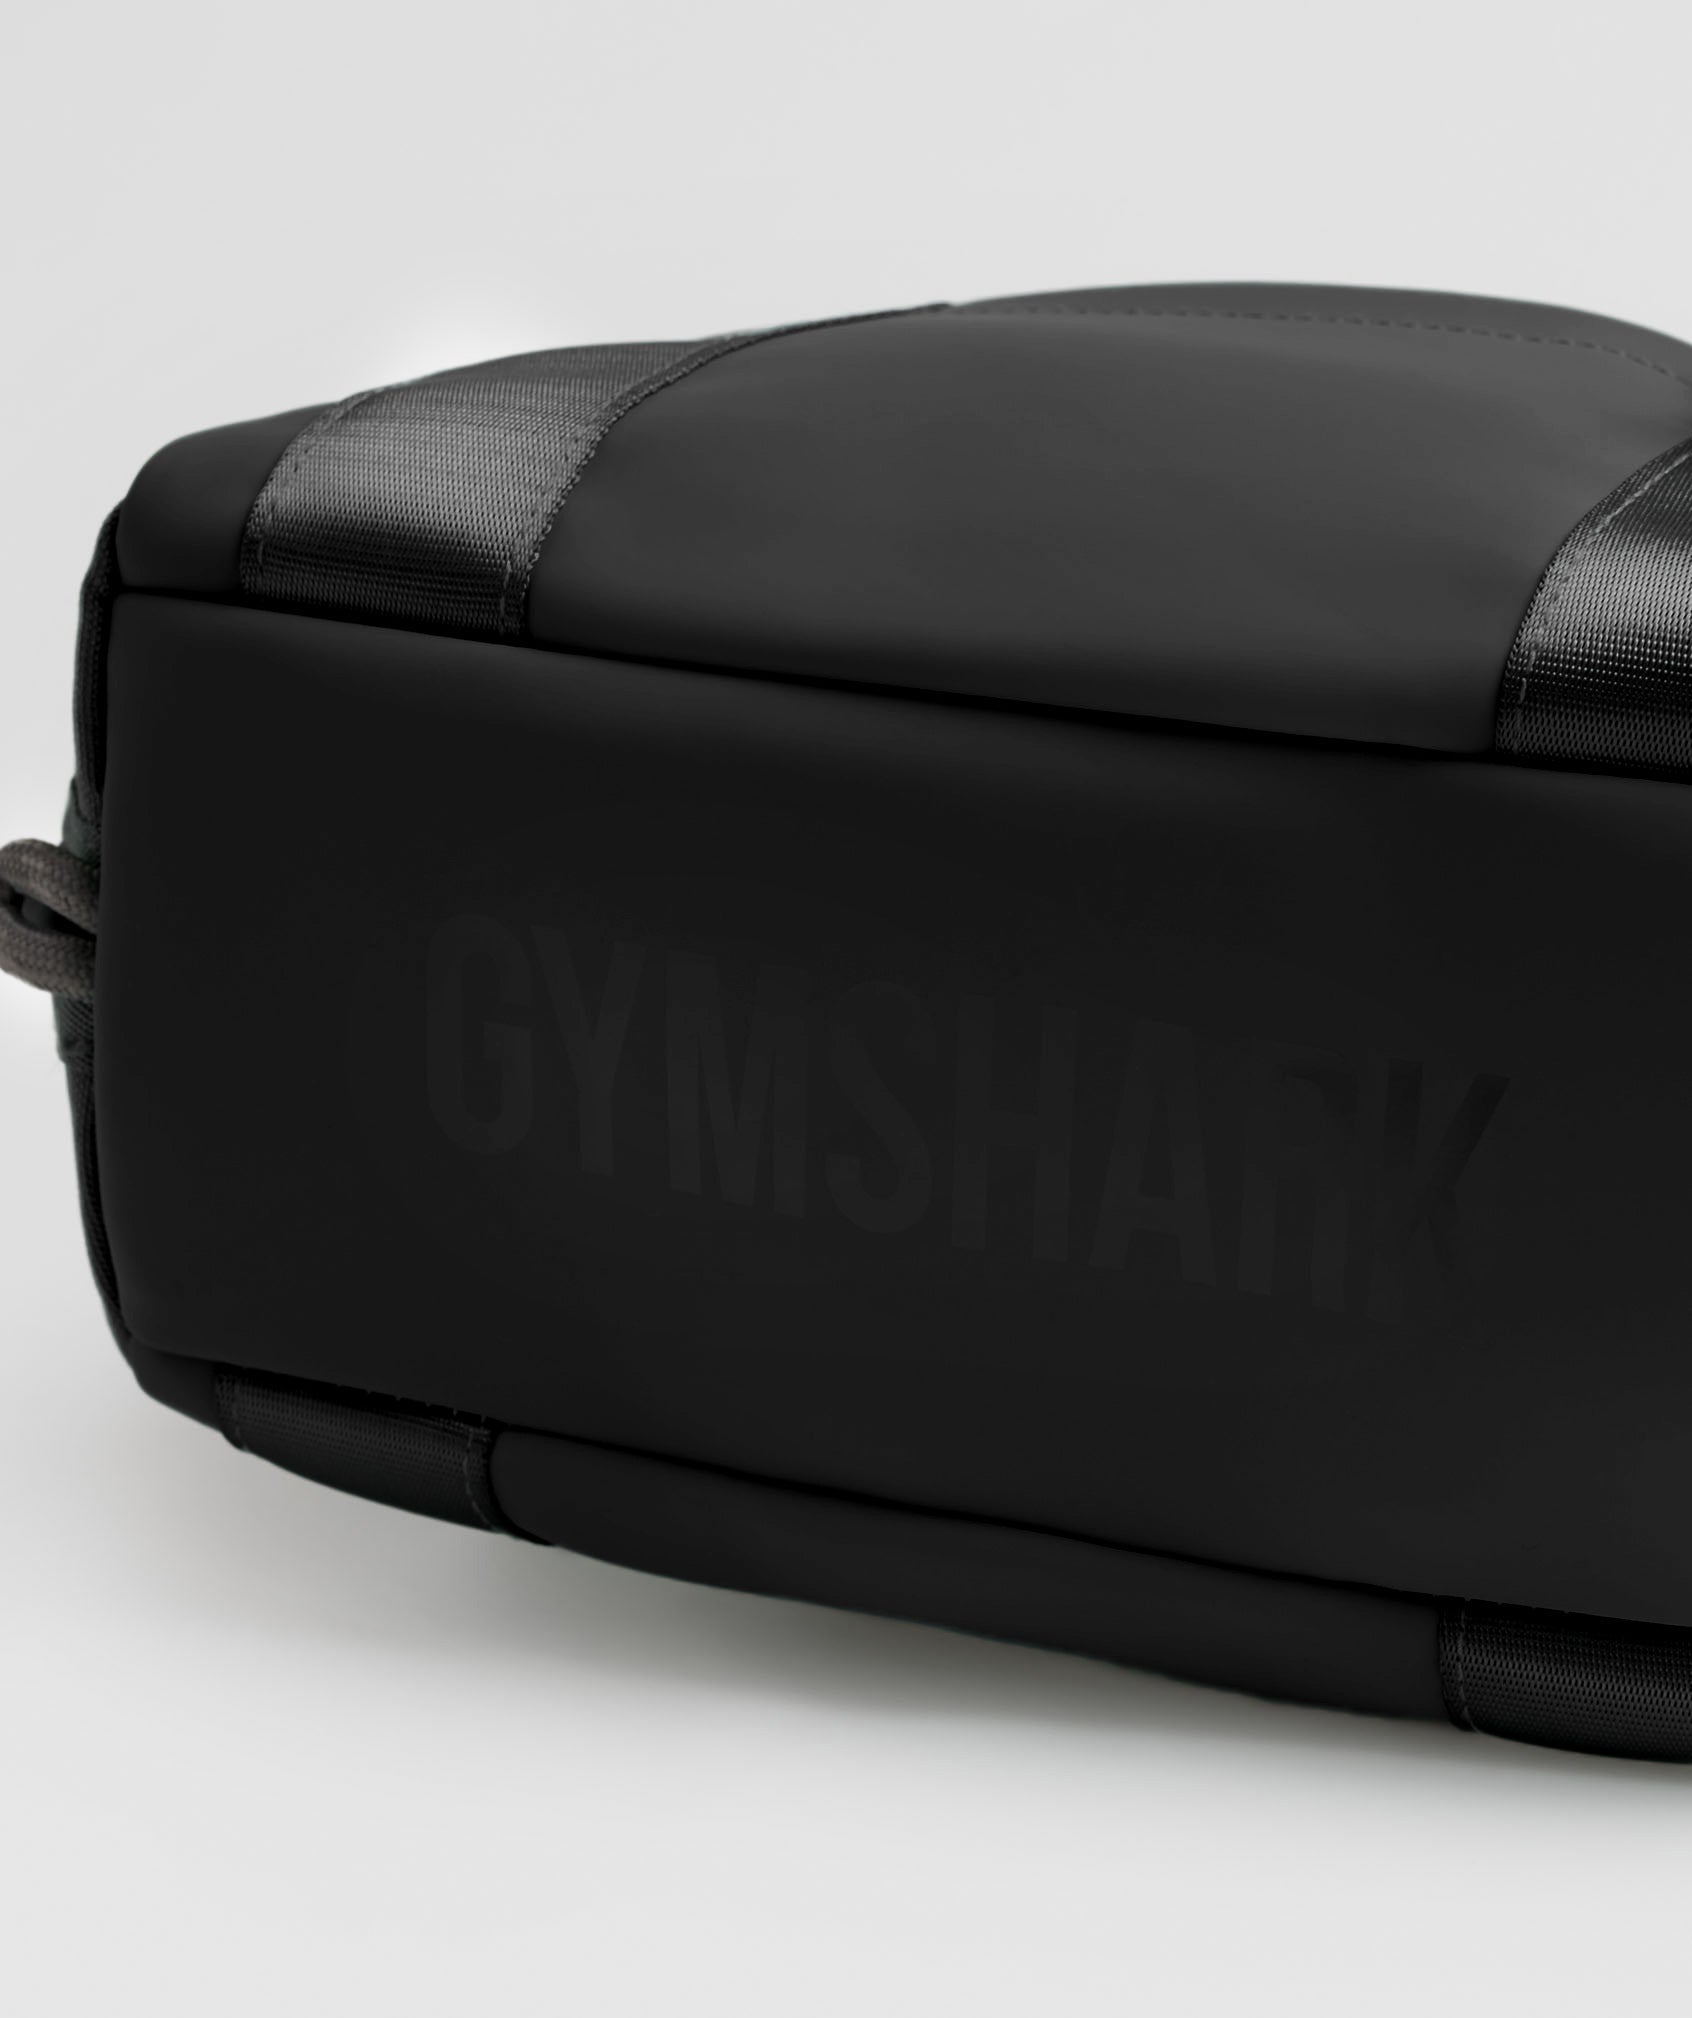 Gymshark Medium Everyday Gym Bag - Black